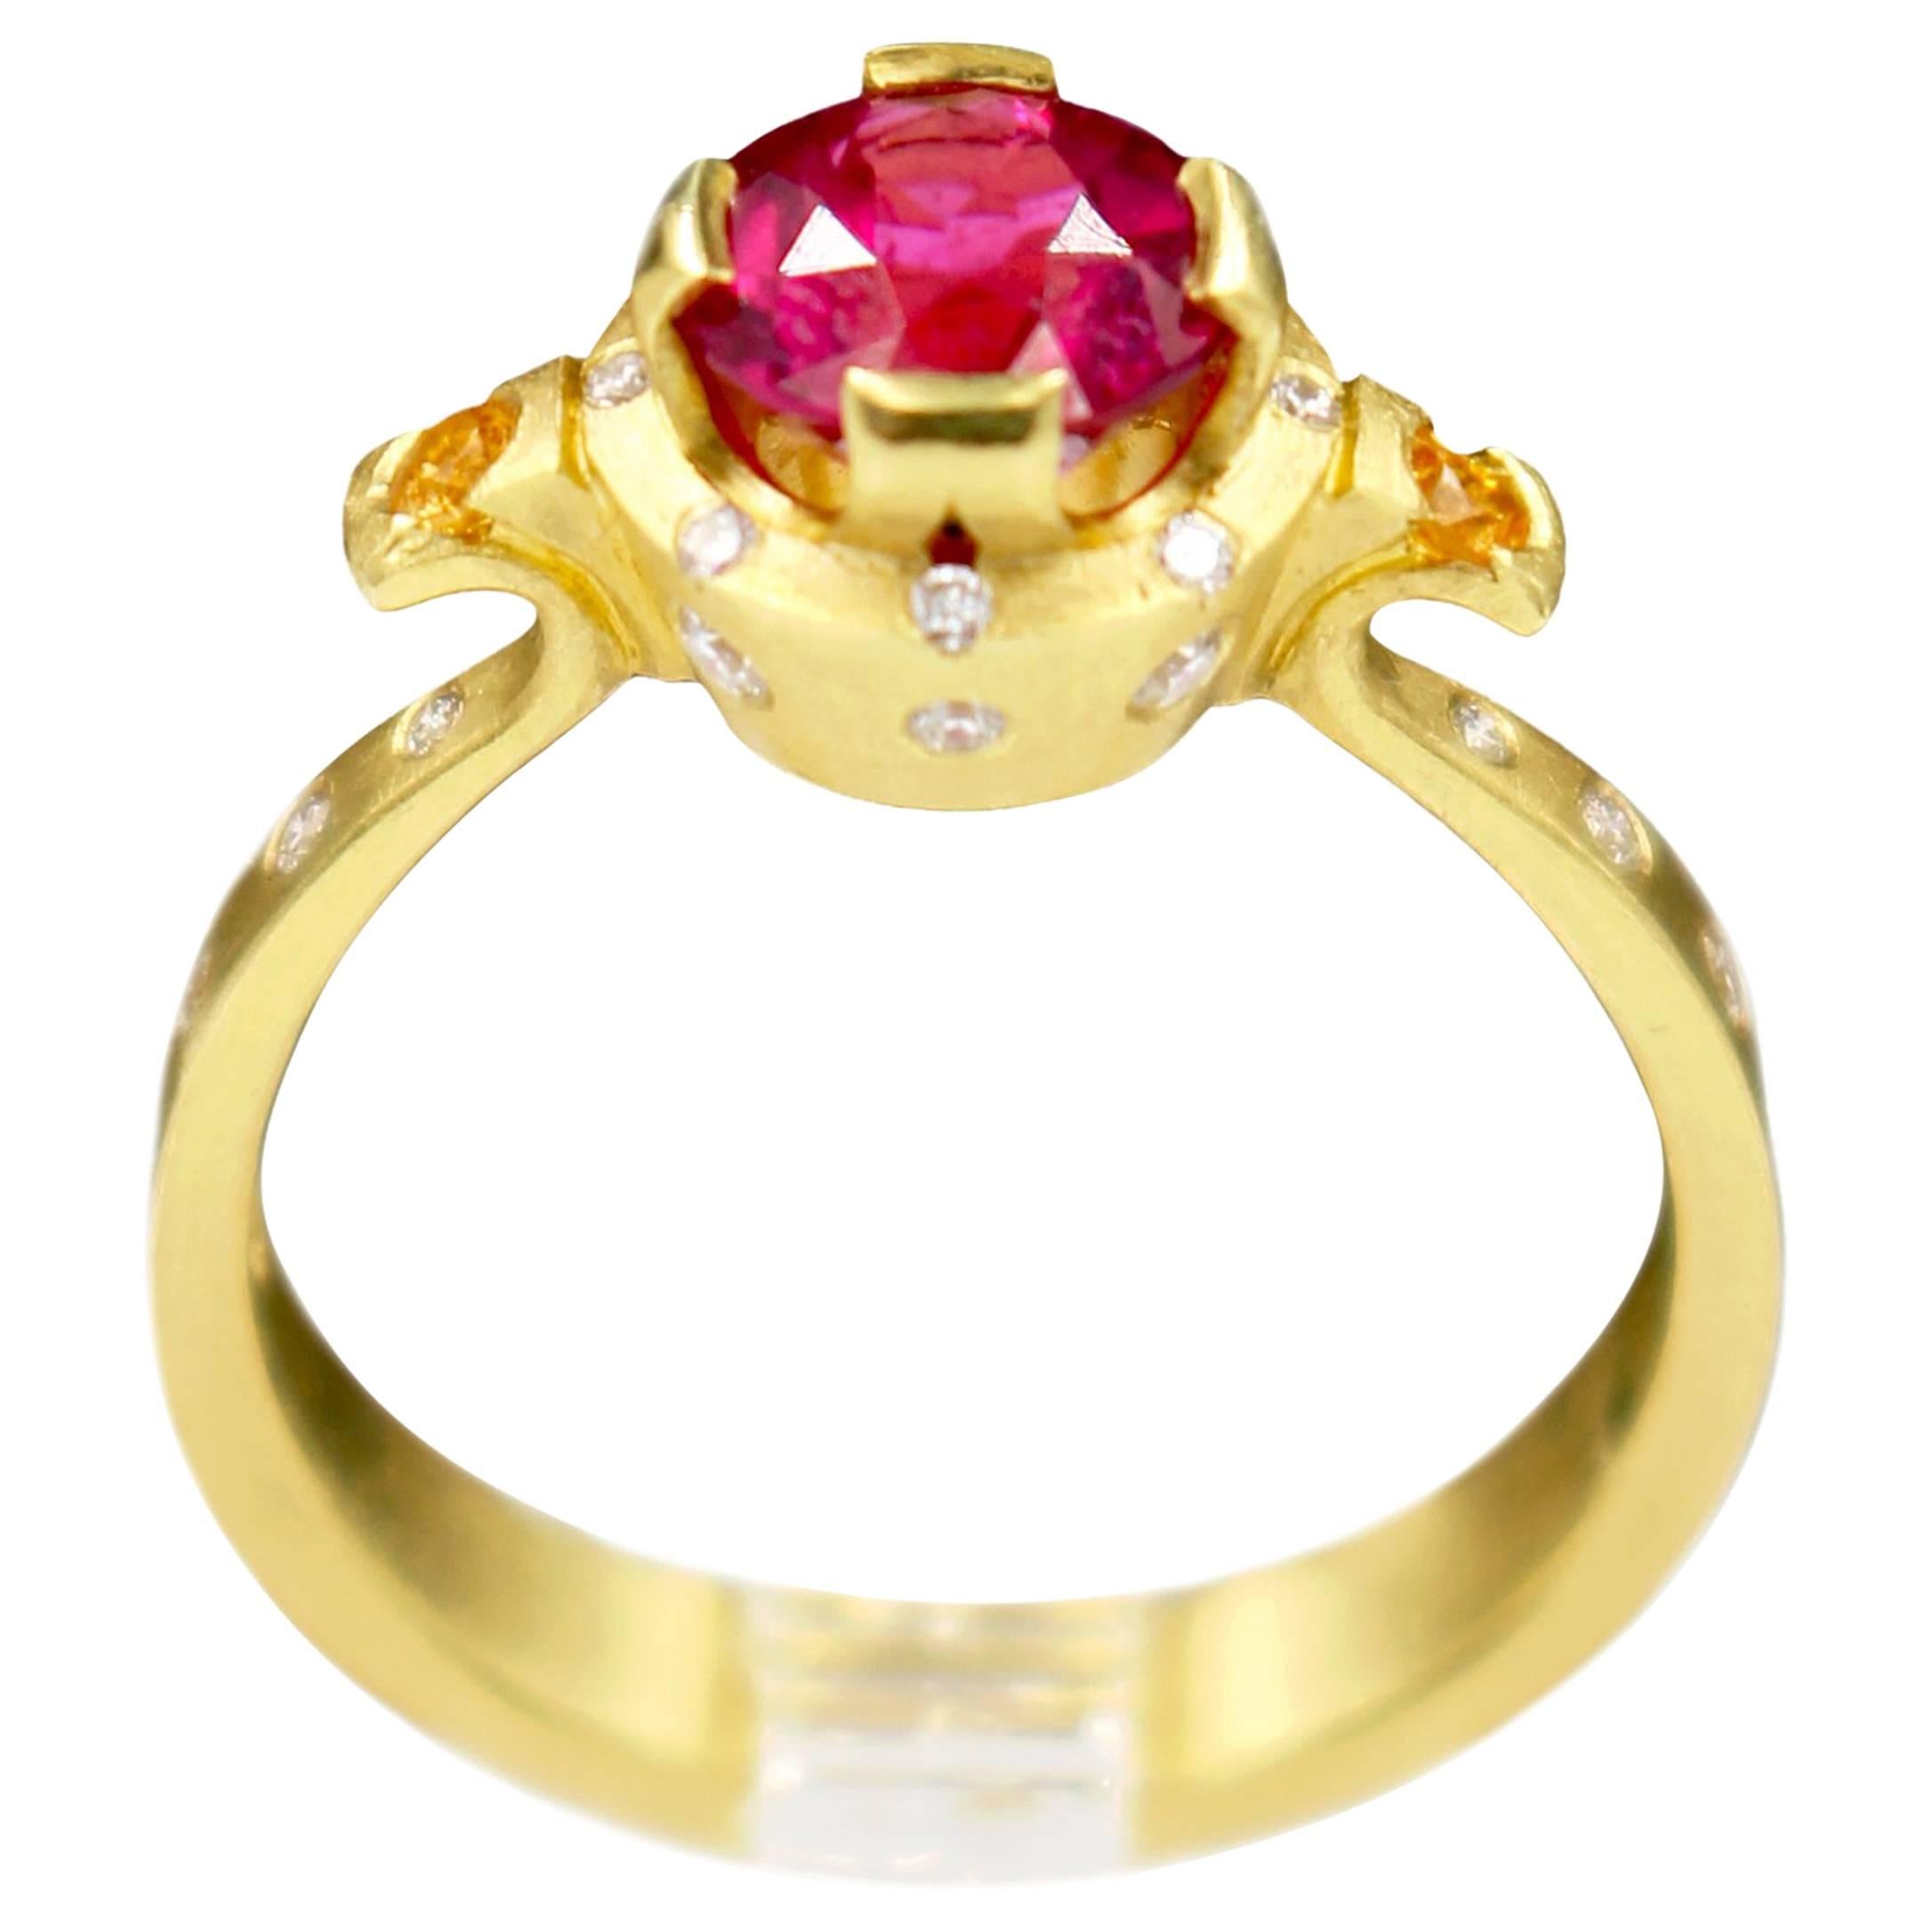 Robin Waynee, Rubellite Tourmaline Ring, 18k Gold, Rubellite Tourmaline, Diamond For Sale